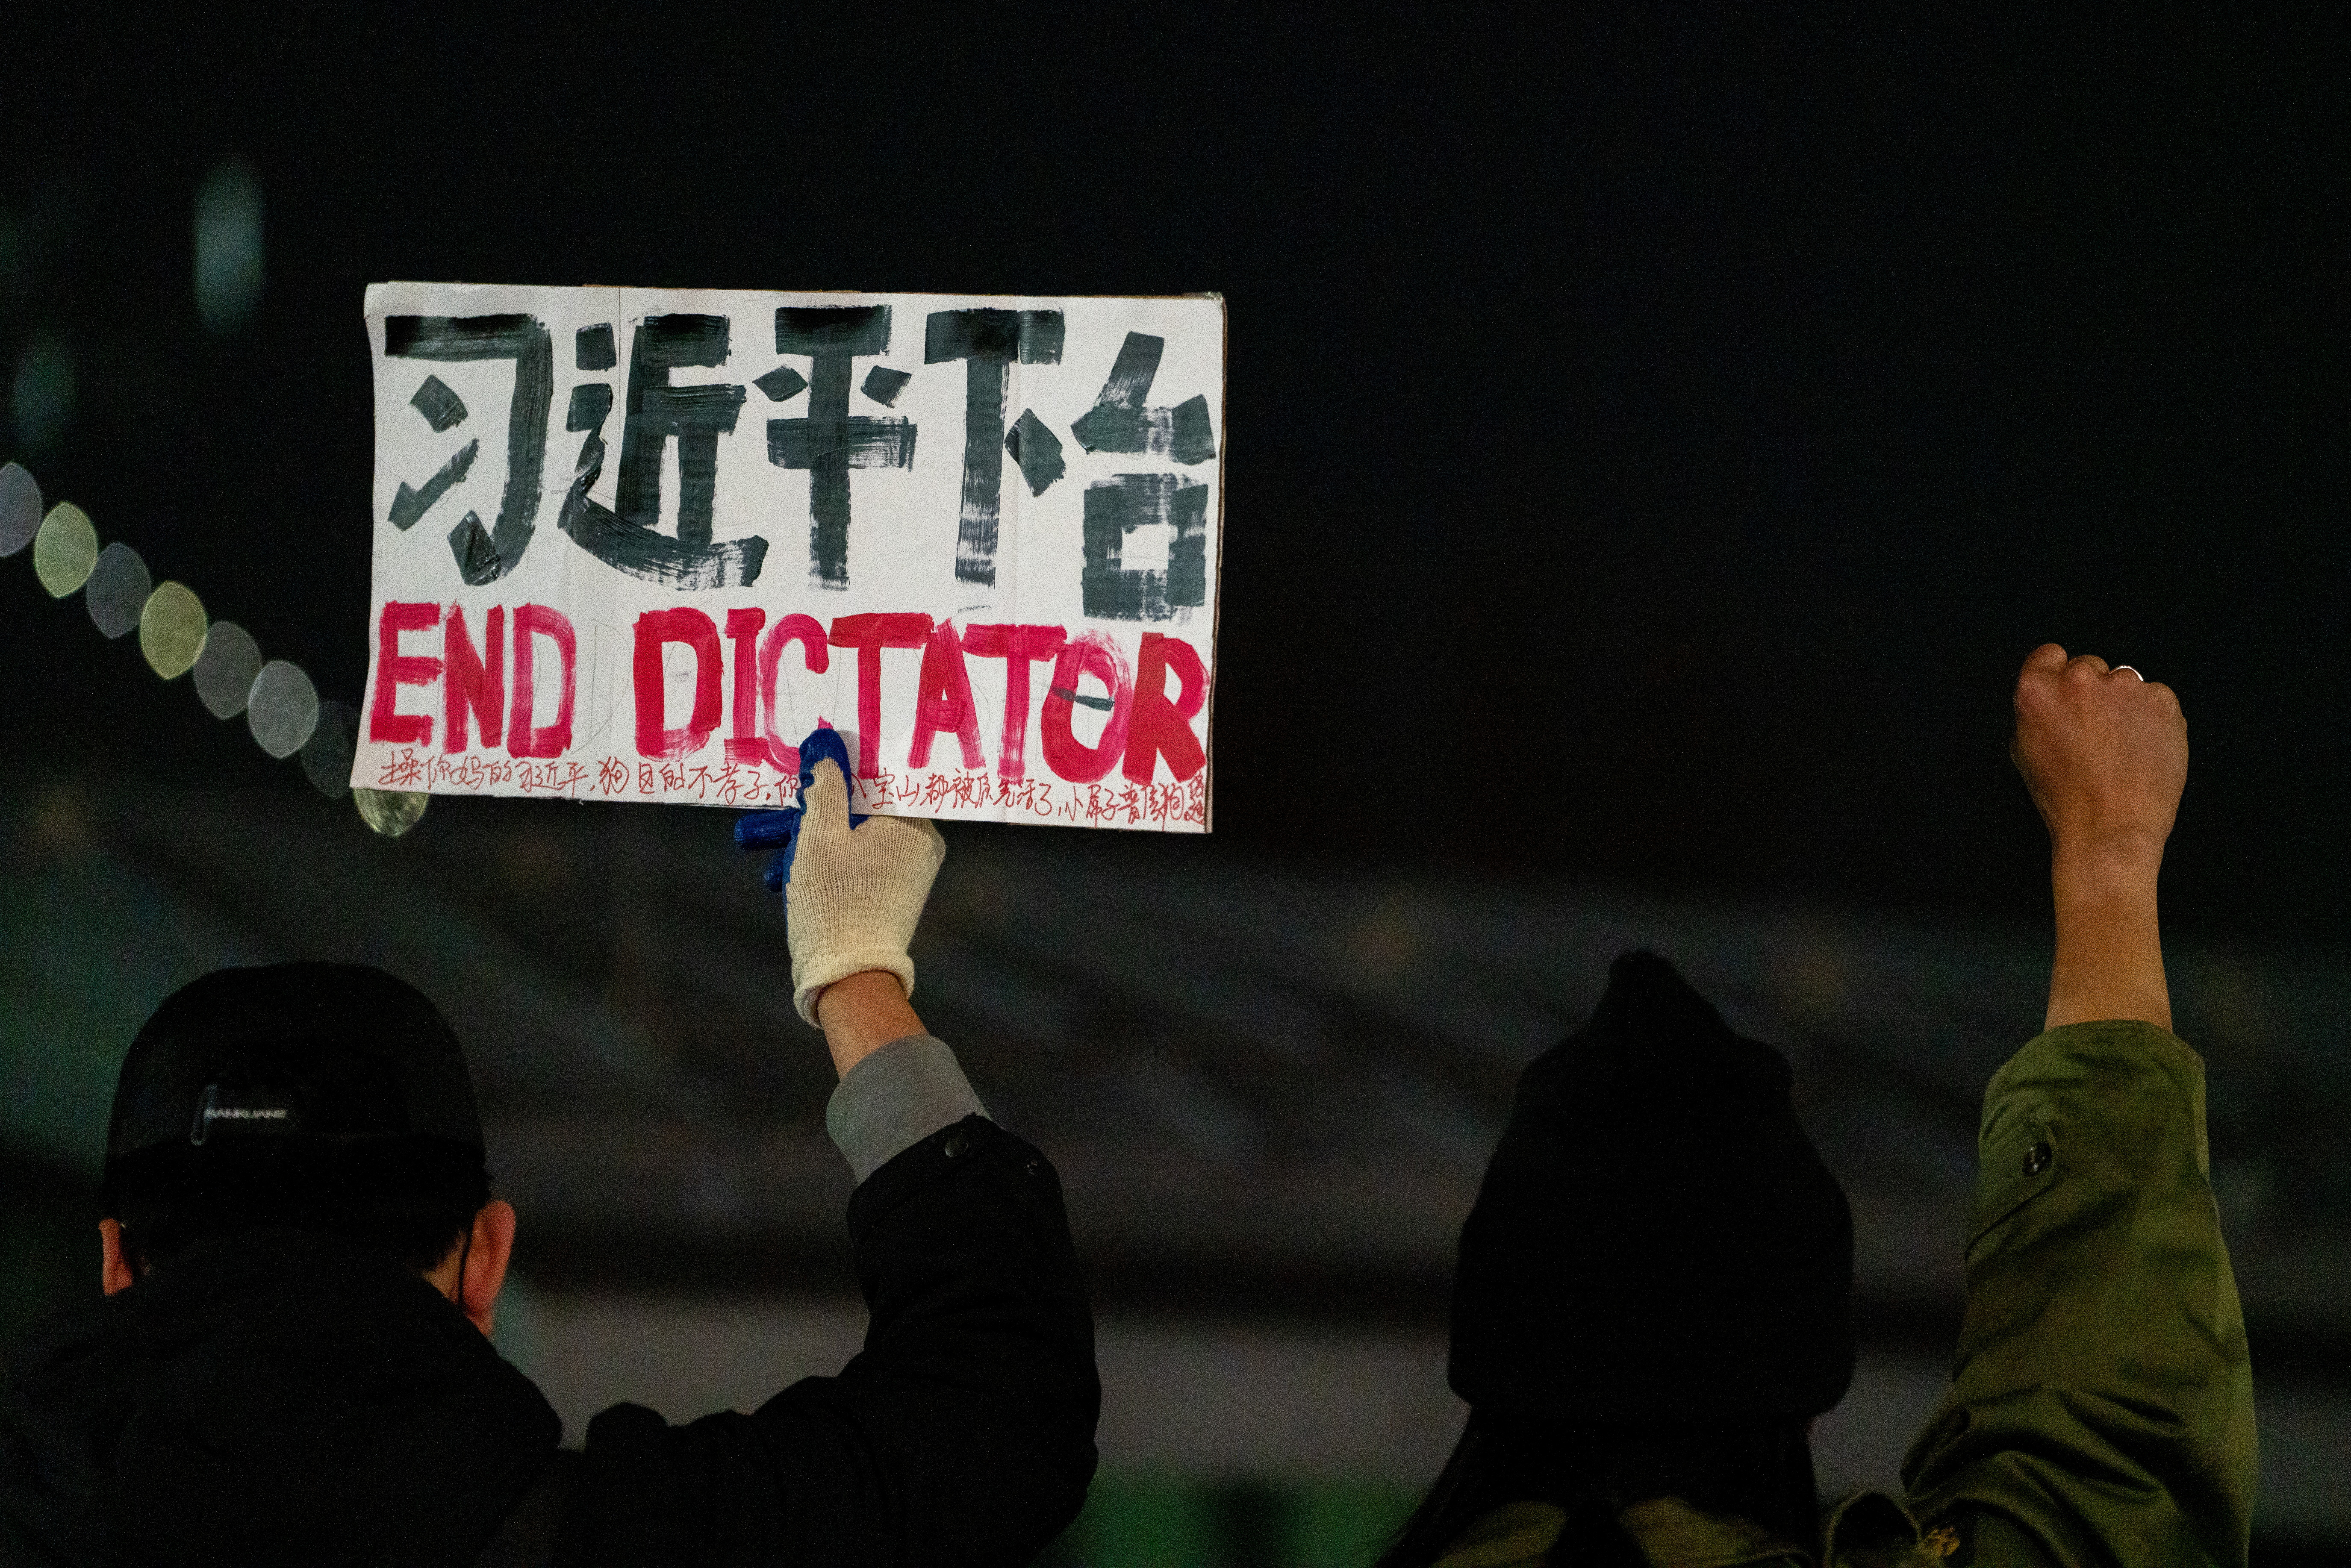 Los chinos en el extranjero intensifican las protestas a medida que aumenta la represión en su país